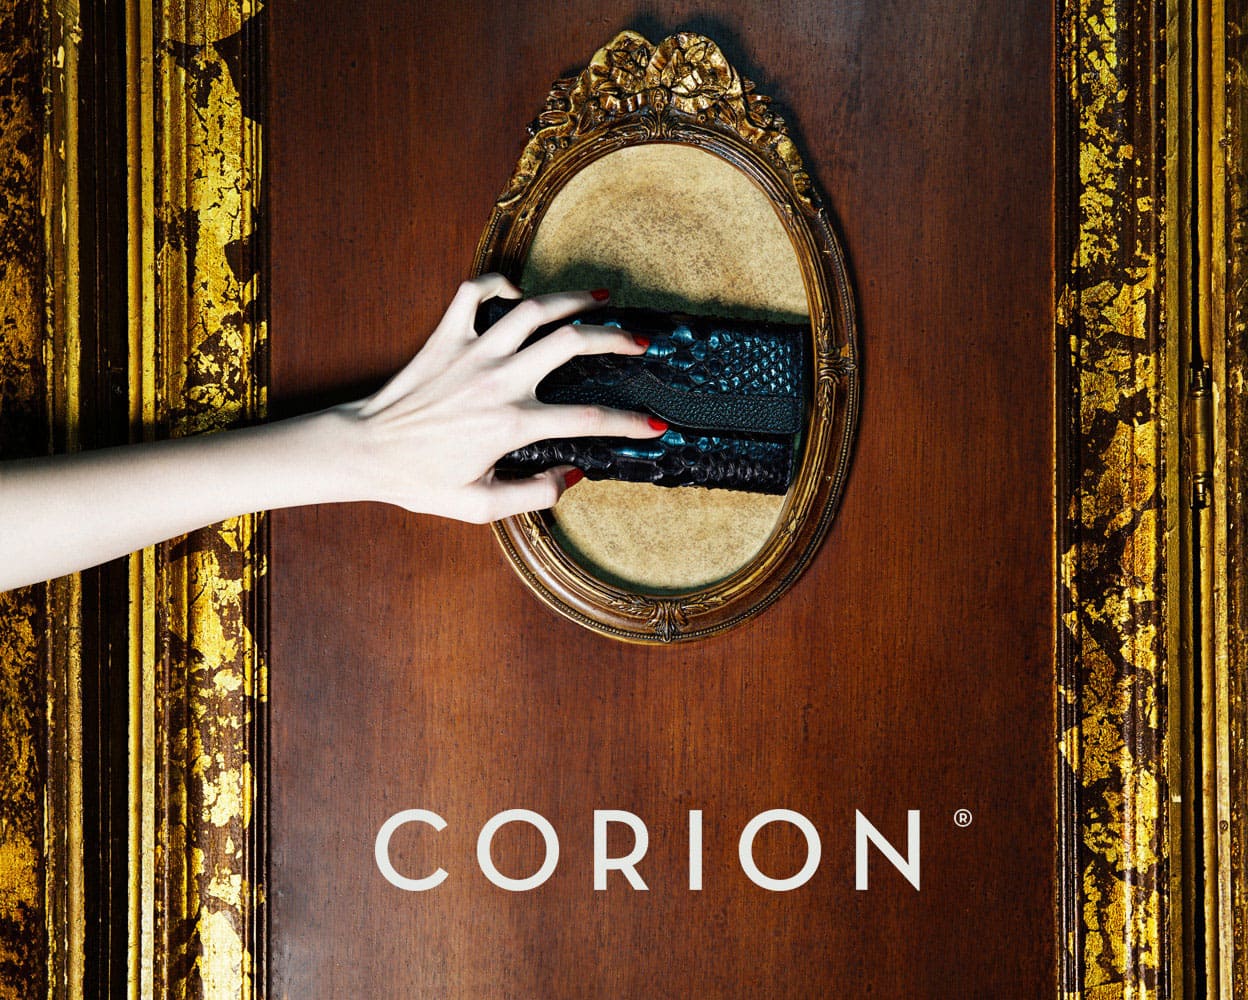 Campaña publicitaria realizada por el fotógrafo Richard Ramos junto a Enri Mür Studio para la marca de bolsos Corion.